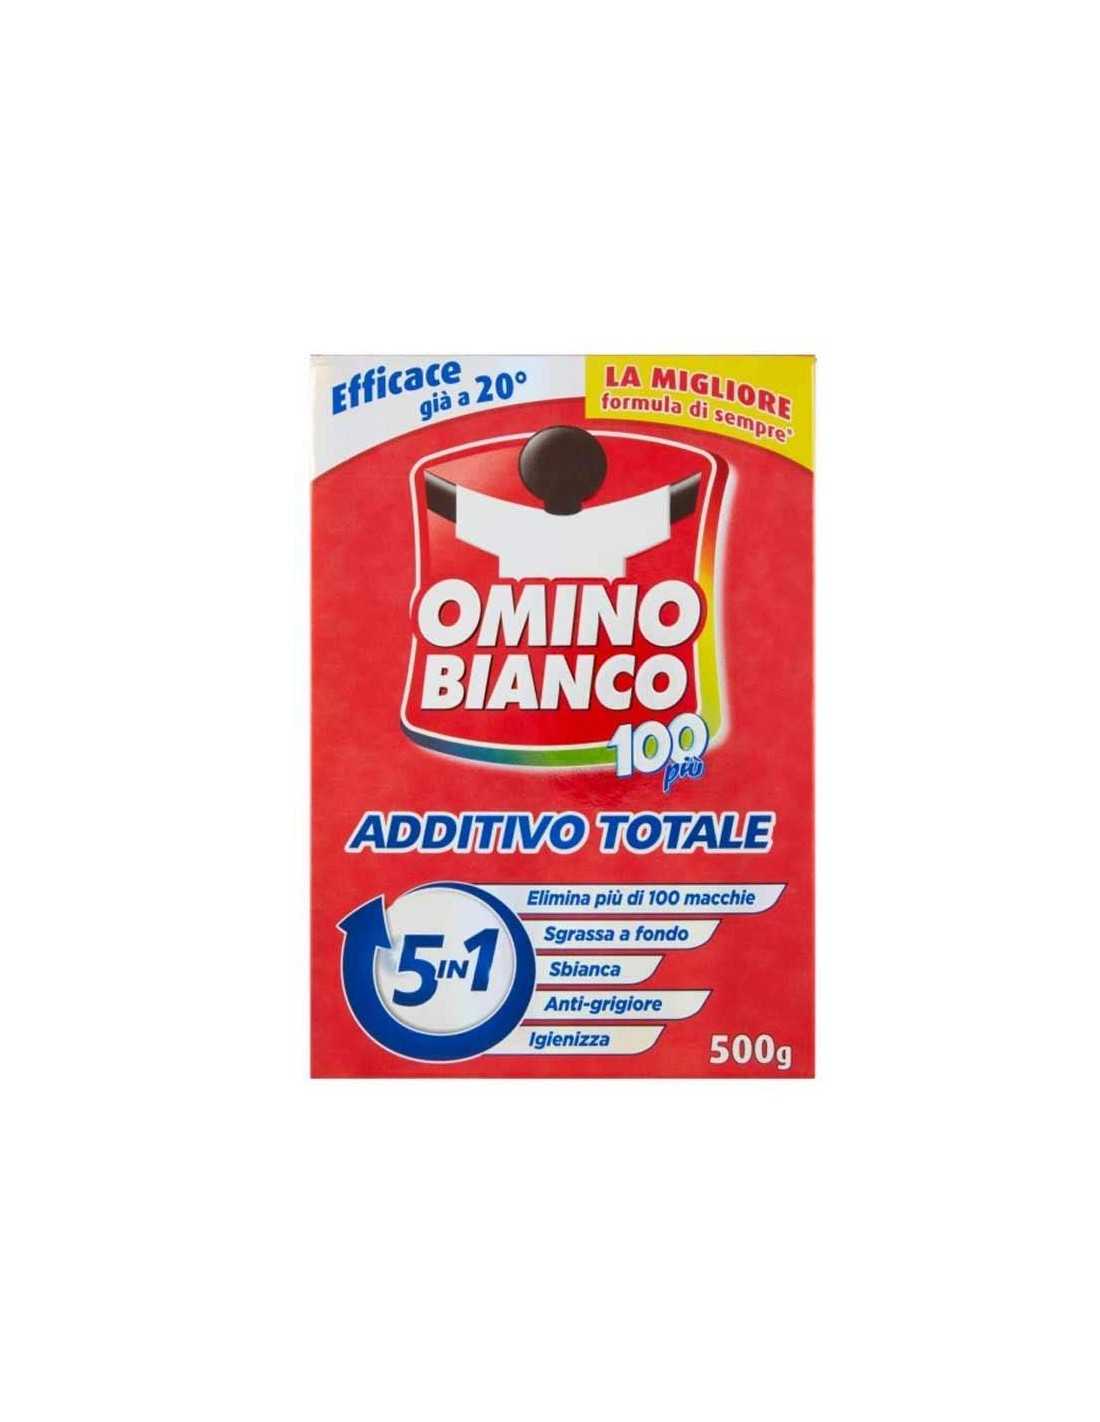 Omino Bianco Additivo Totale 5 in 1 Grammi 500